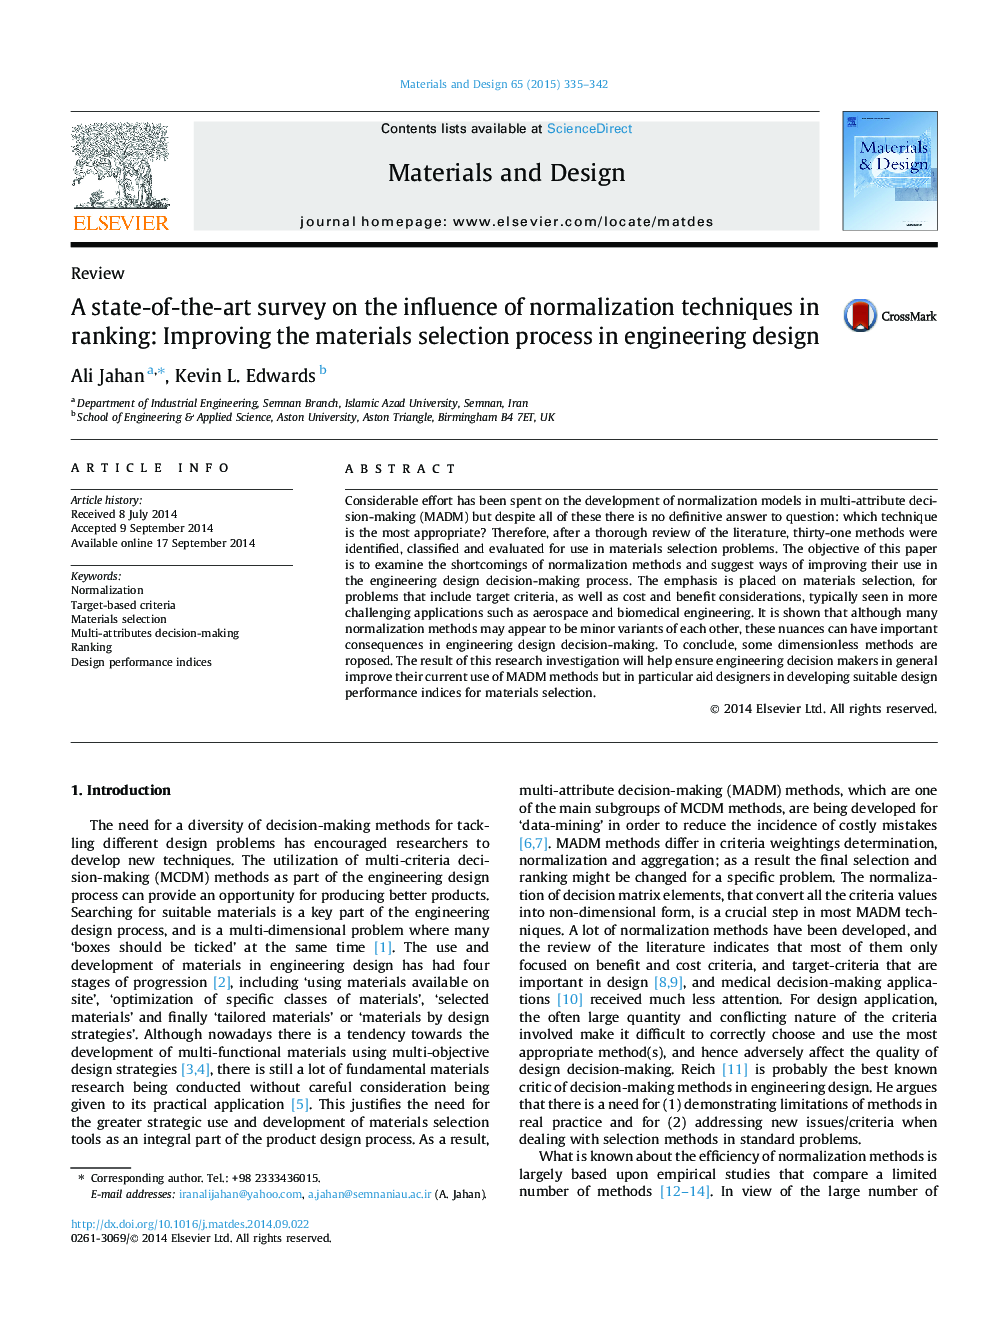 یک نظرسنجی در مورد تاثیر تکنیک های عادی در رتبه بندی: بهبود فرآیند انتخاب مواد در طراحی مهندسی 